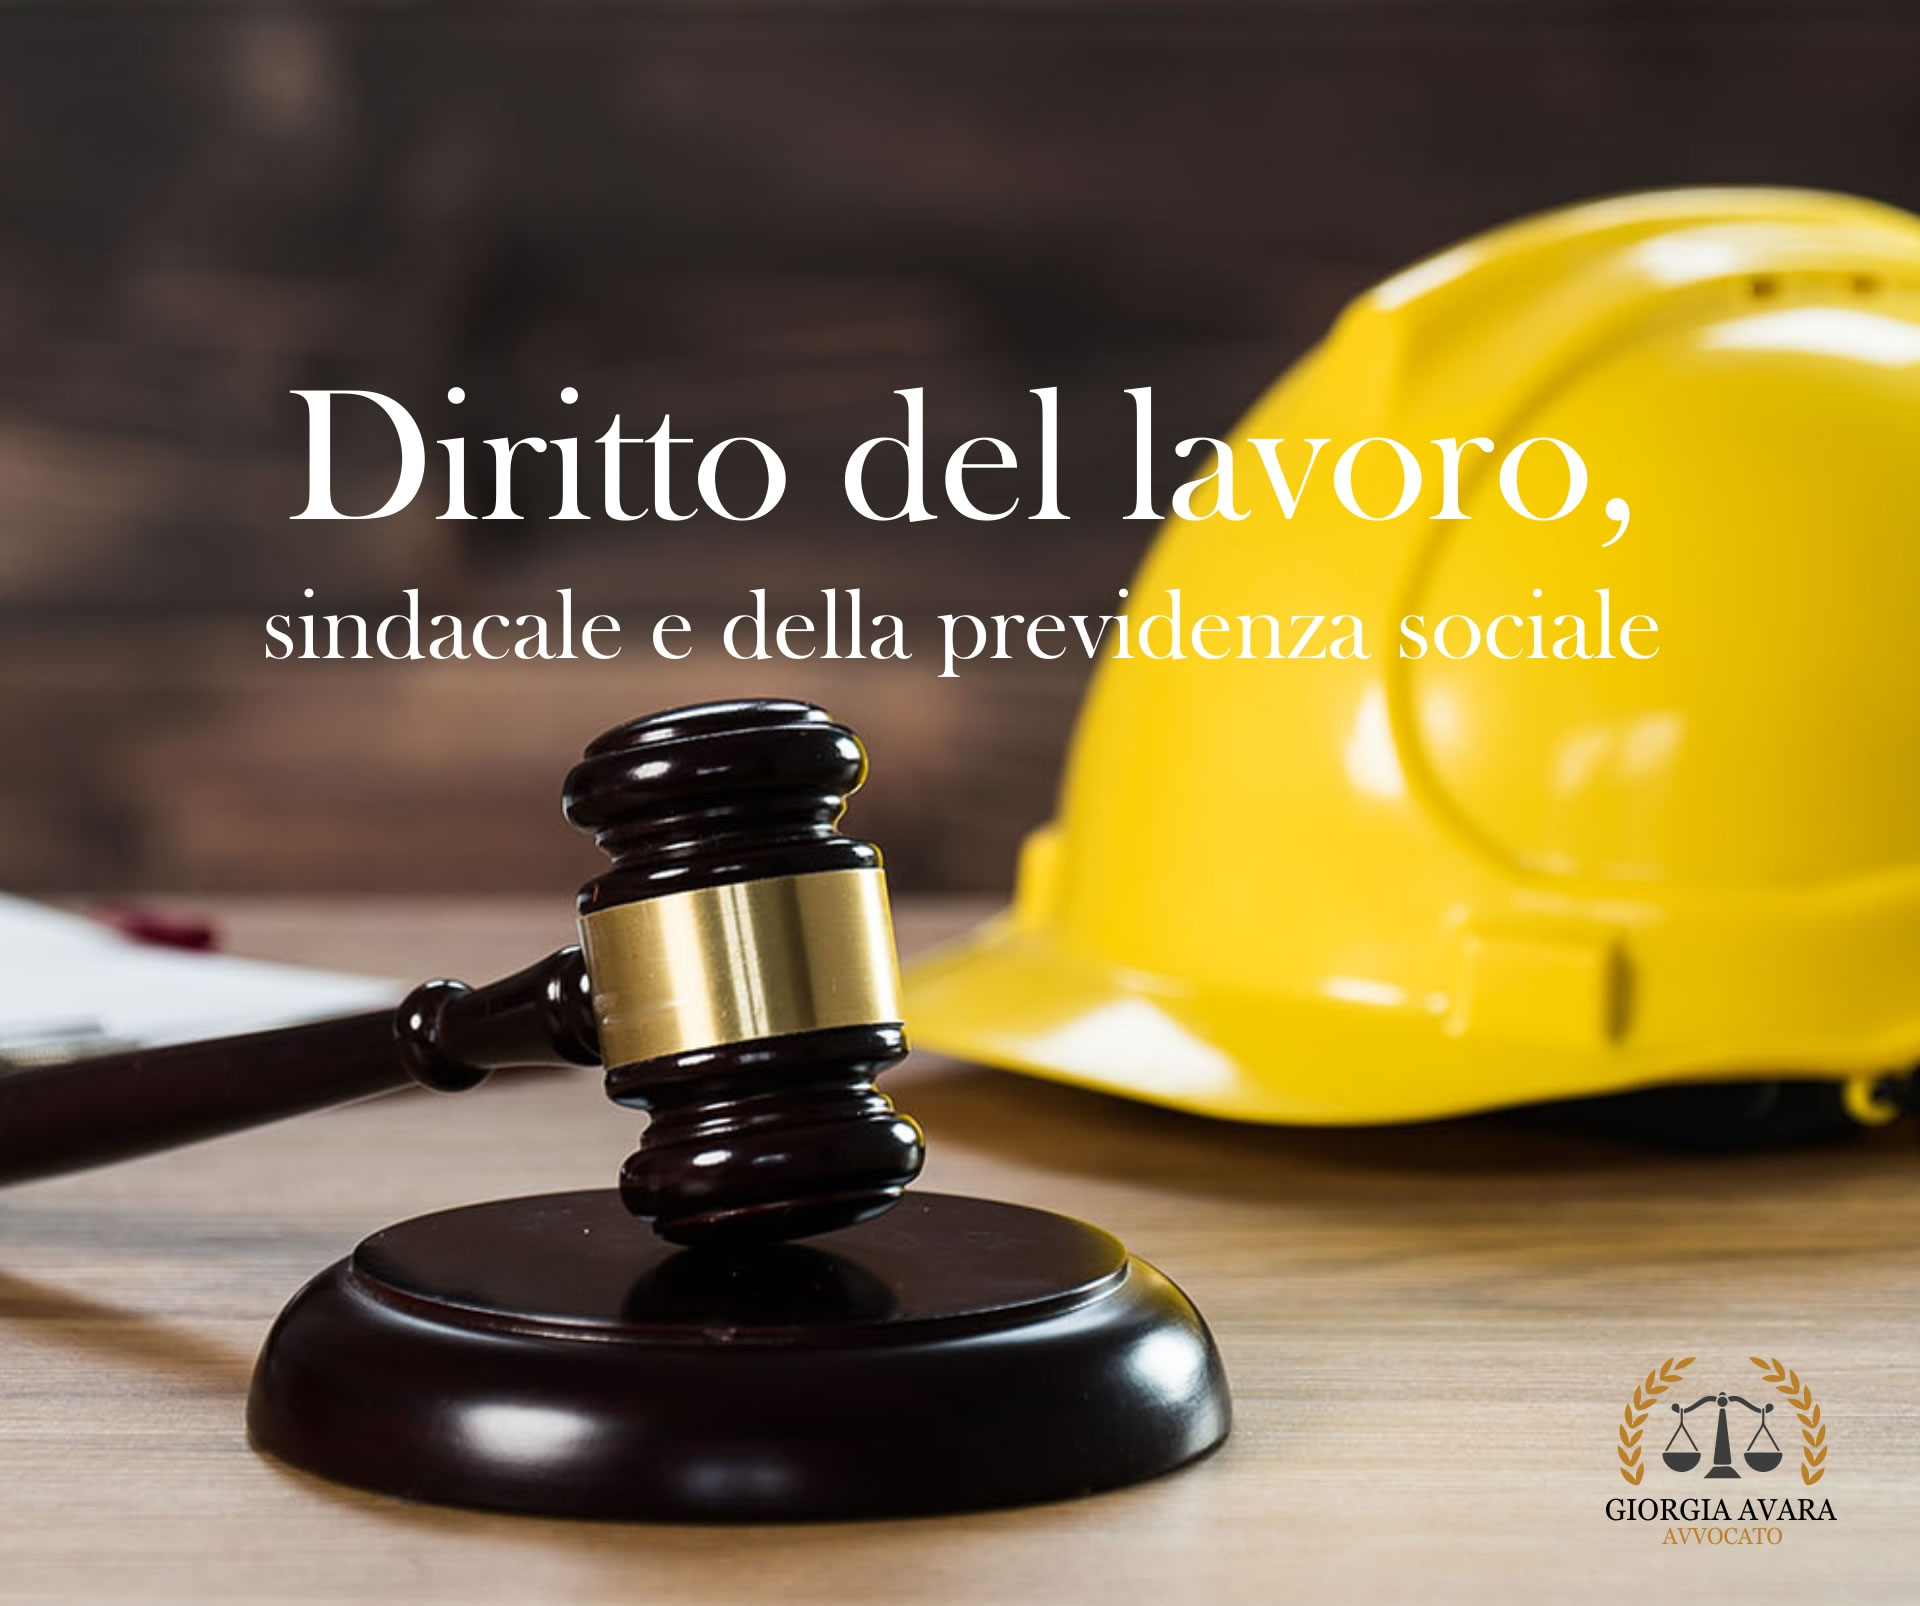 Diritto del lavoro, sindacale e della previdenza sociale, avvocato Palermo